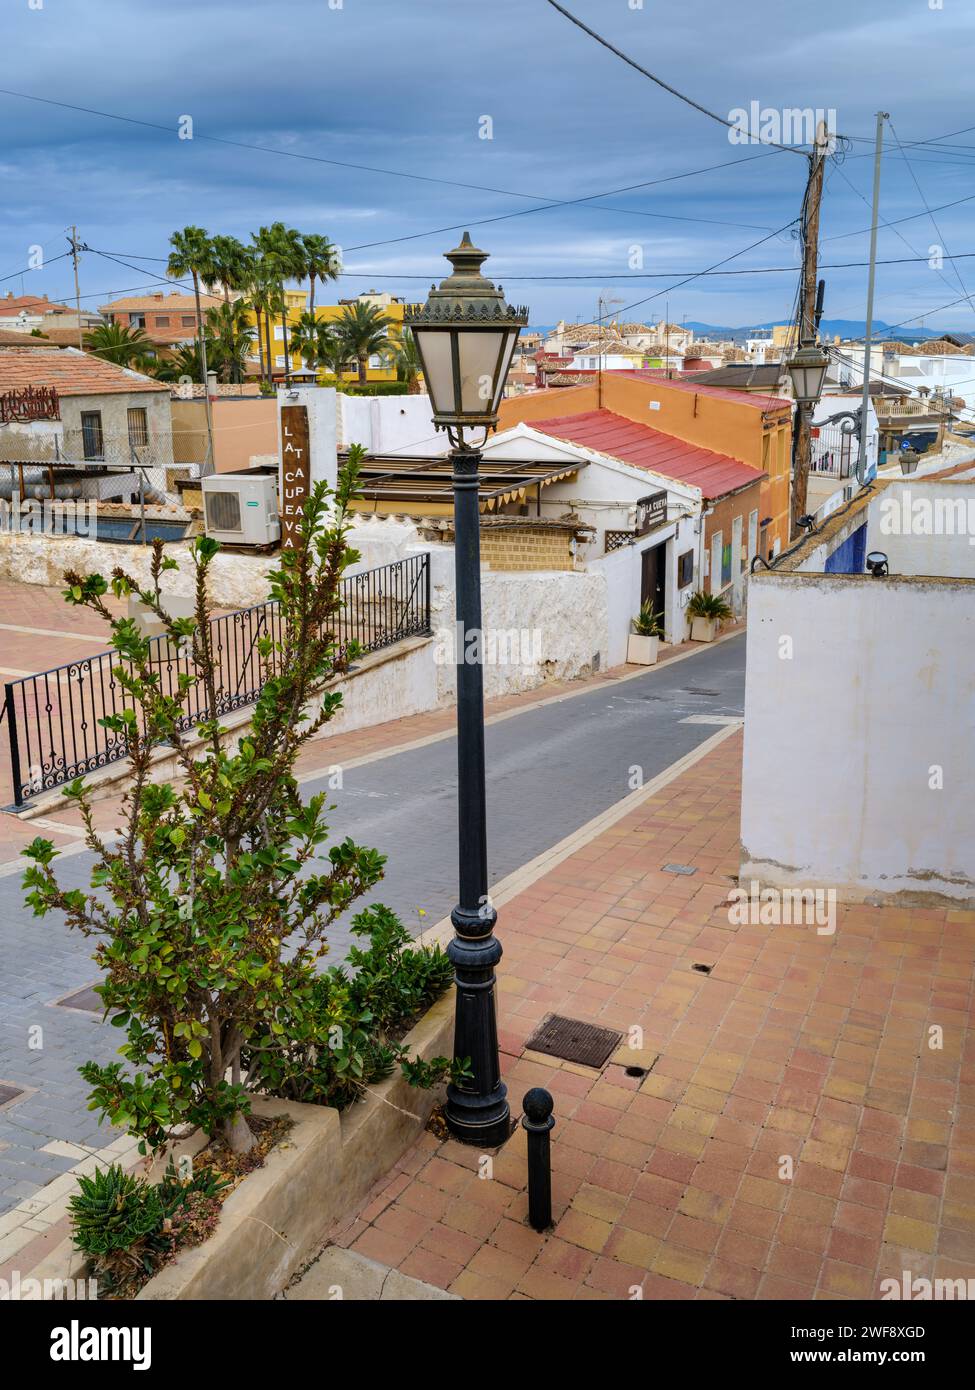 Calle la Cenia - San Miguel de Salinas, Alicante, Espagne. L'une des rues pittoresques bordées d'une variété de petites maisons et d'appartements à San mig Banque D'Images